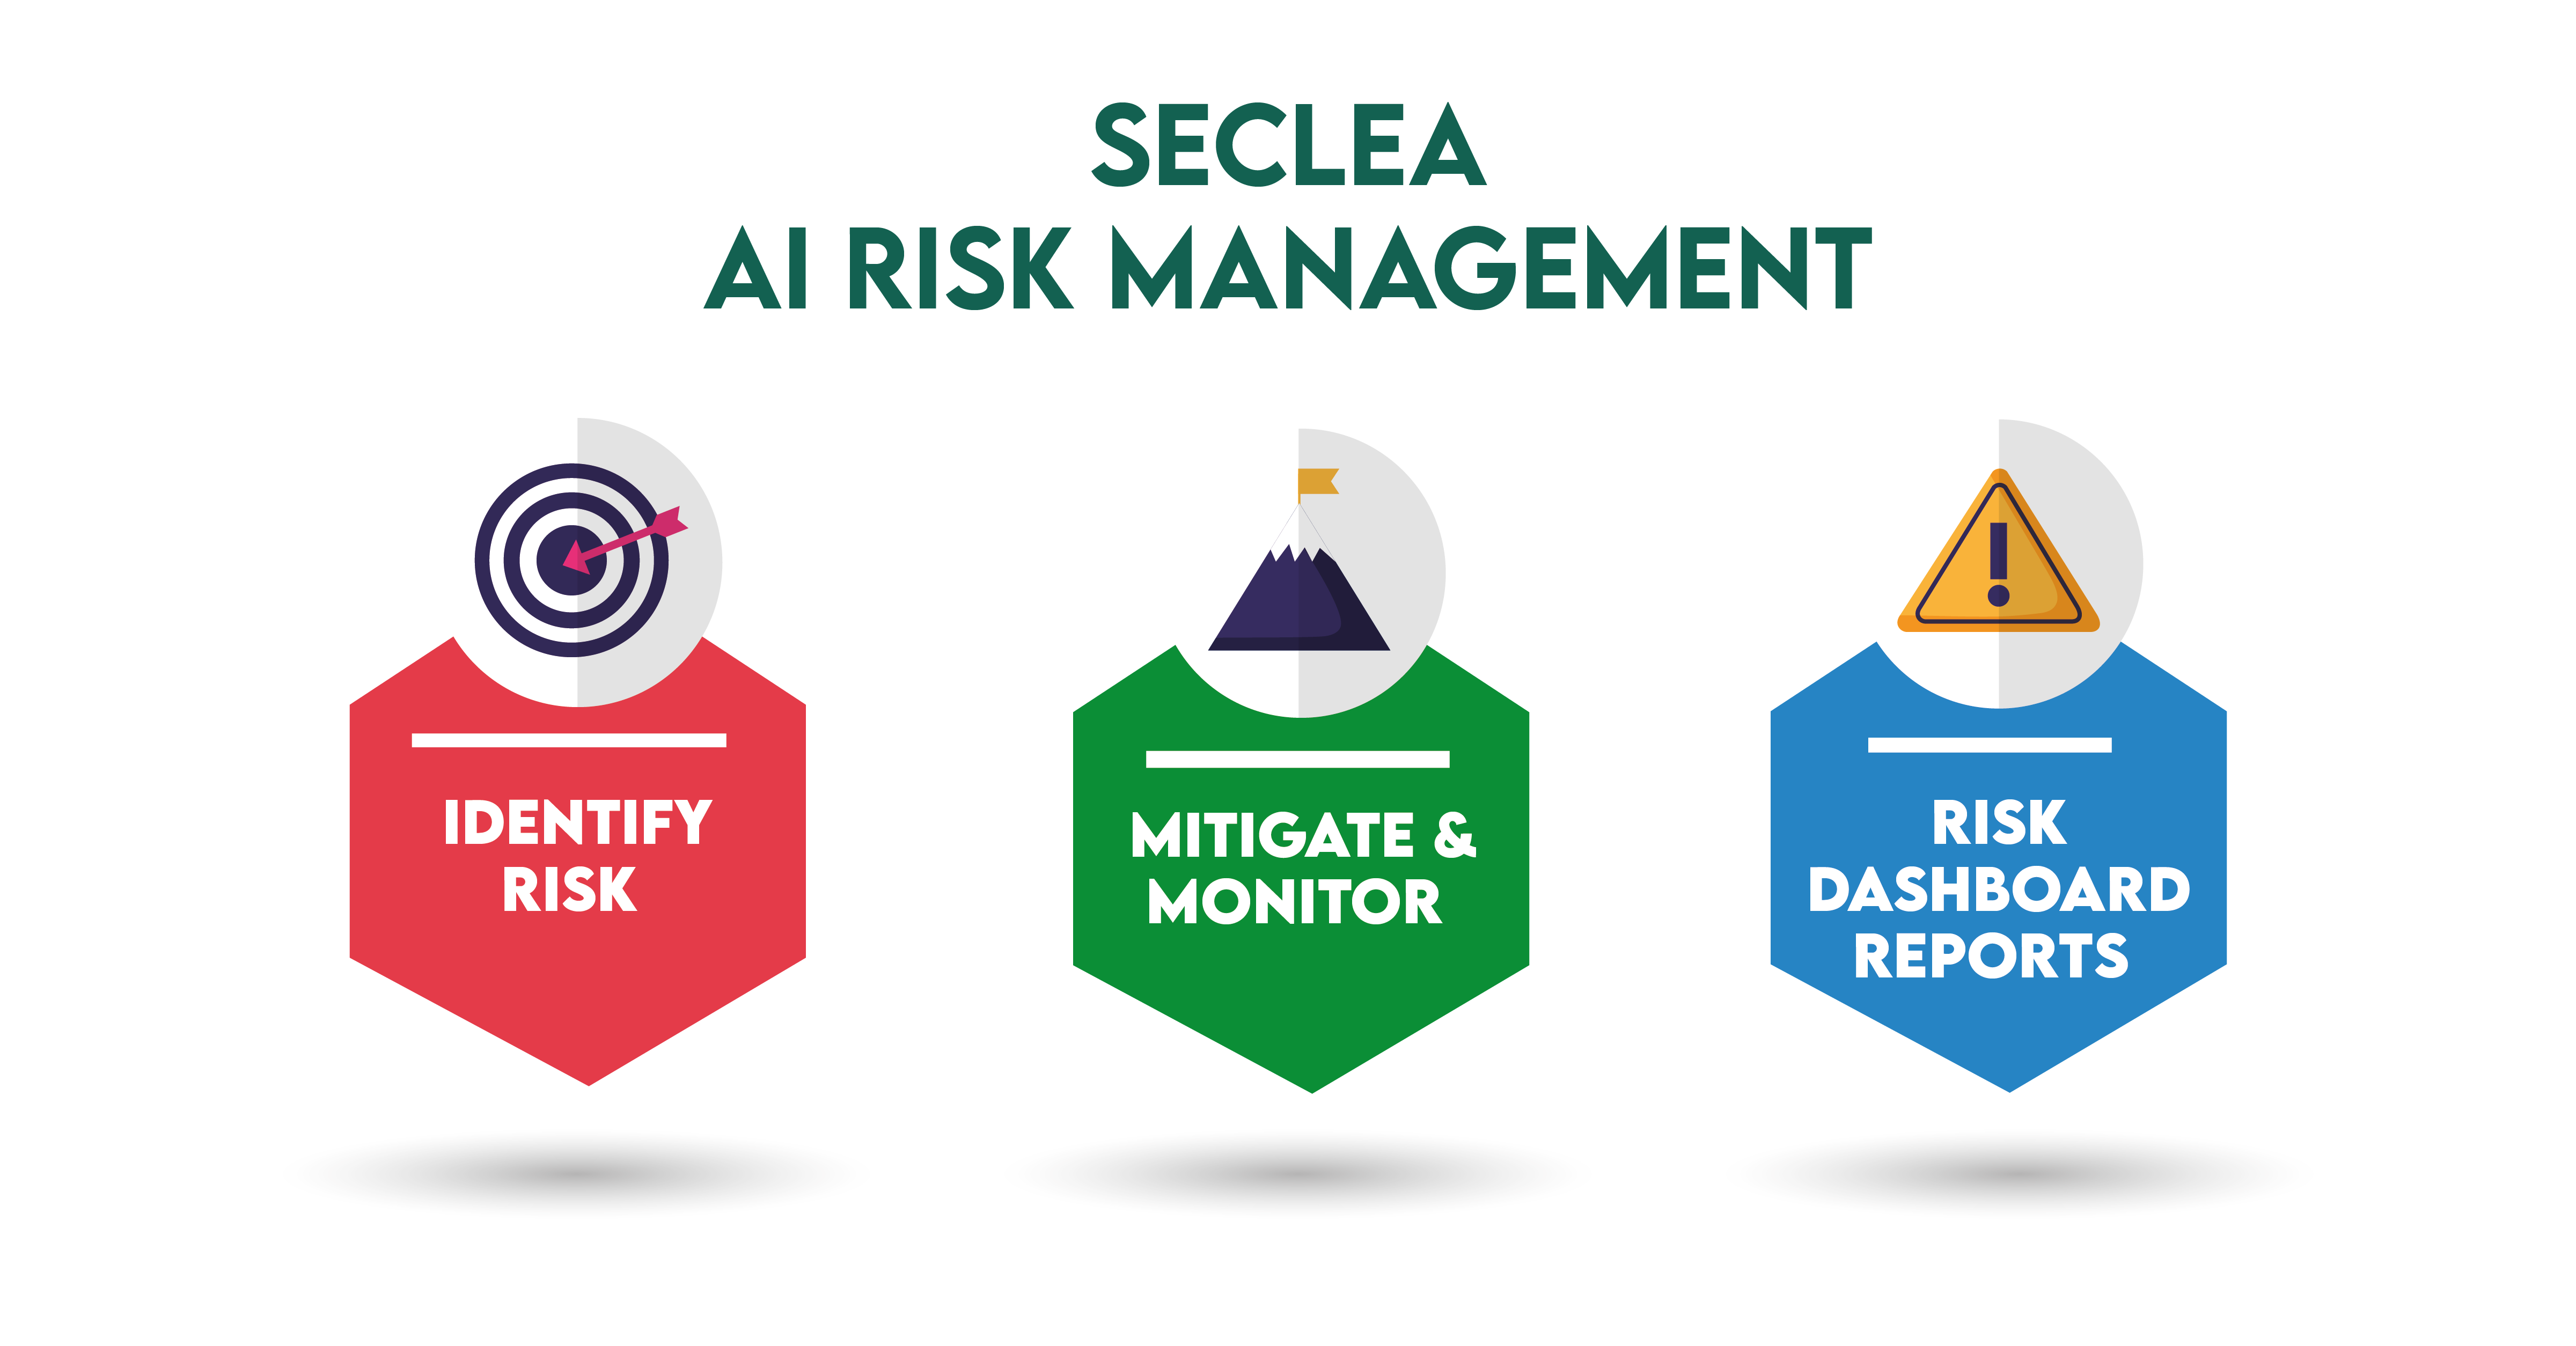 Understanding risk management 2: Risk Awareness Wisdom AI Bot RISK